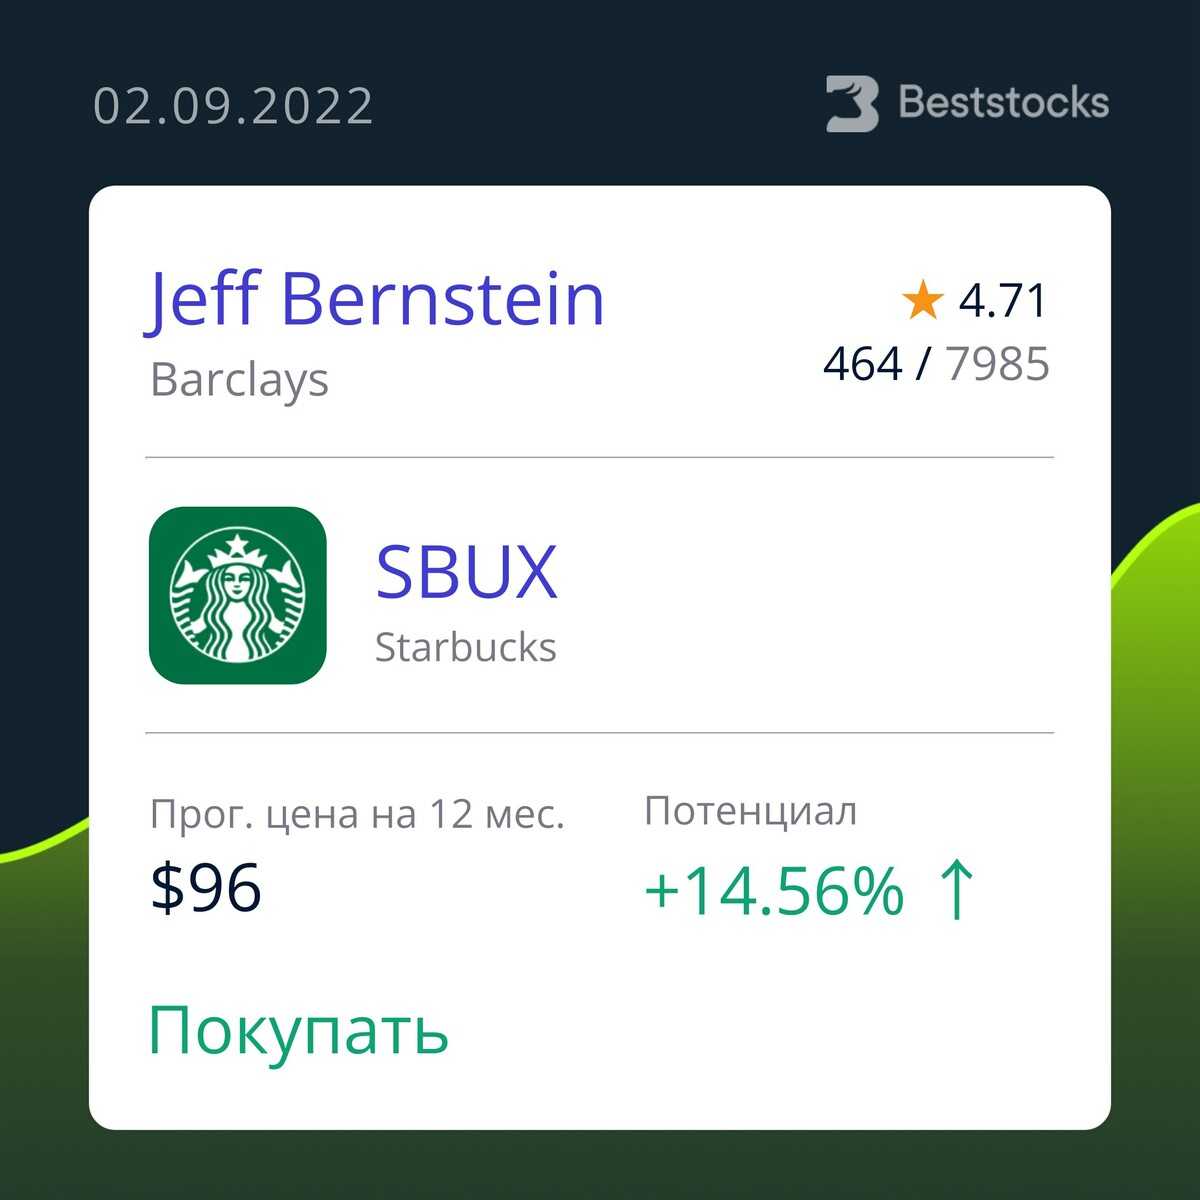 Акции starbucks (sbux) — ароматный кофе и выгодные инвестиции